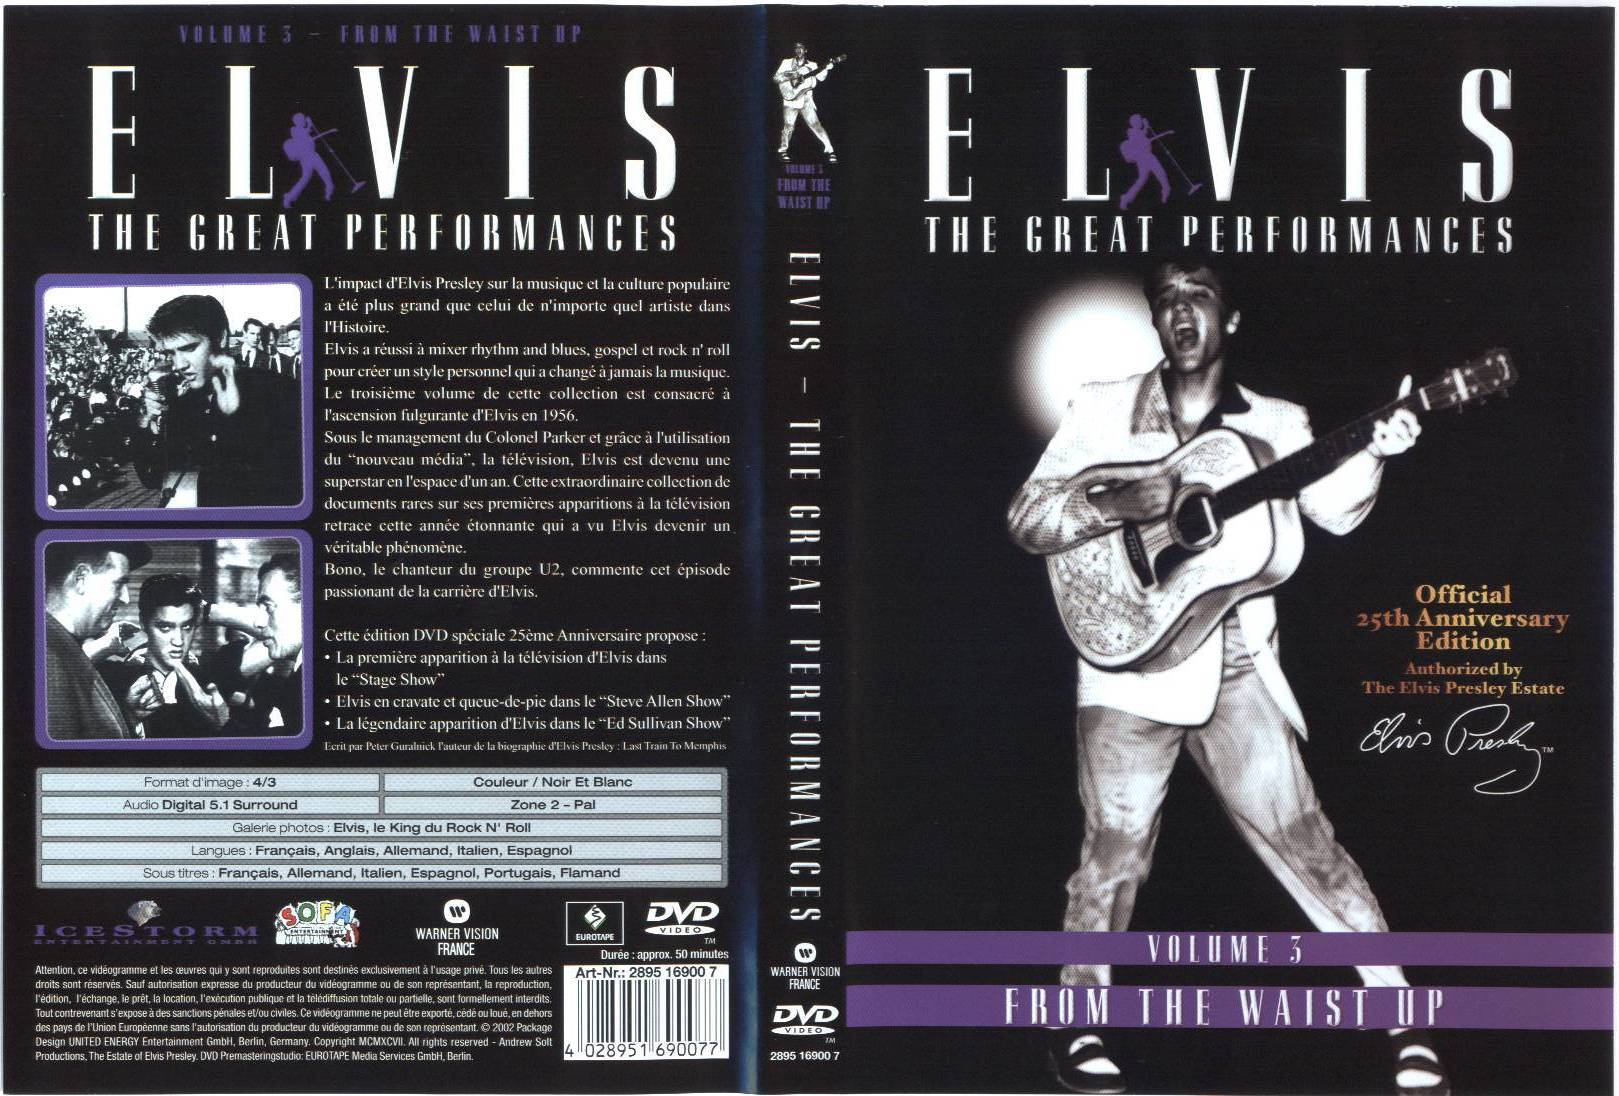 Jaquette DVD Elvis the great performances vol 3